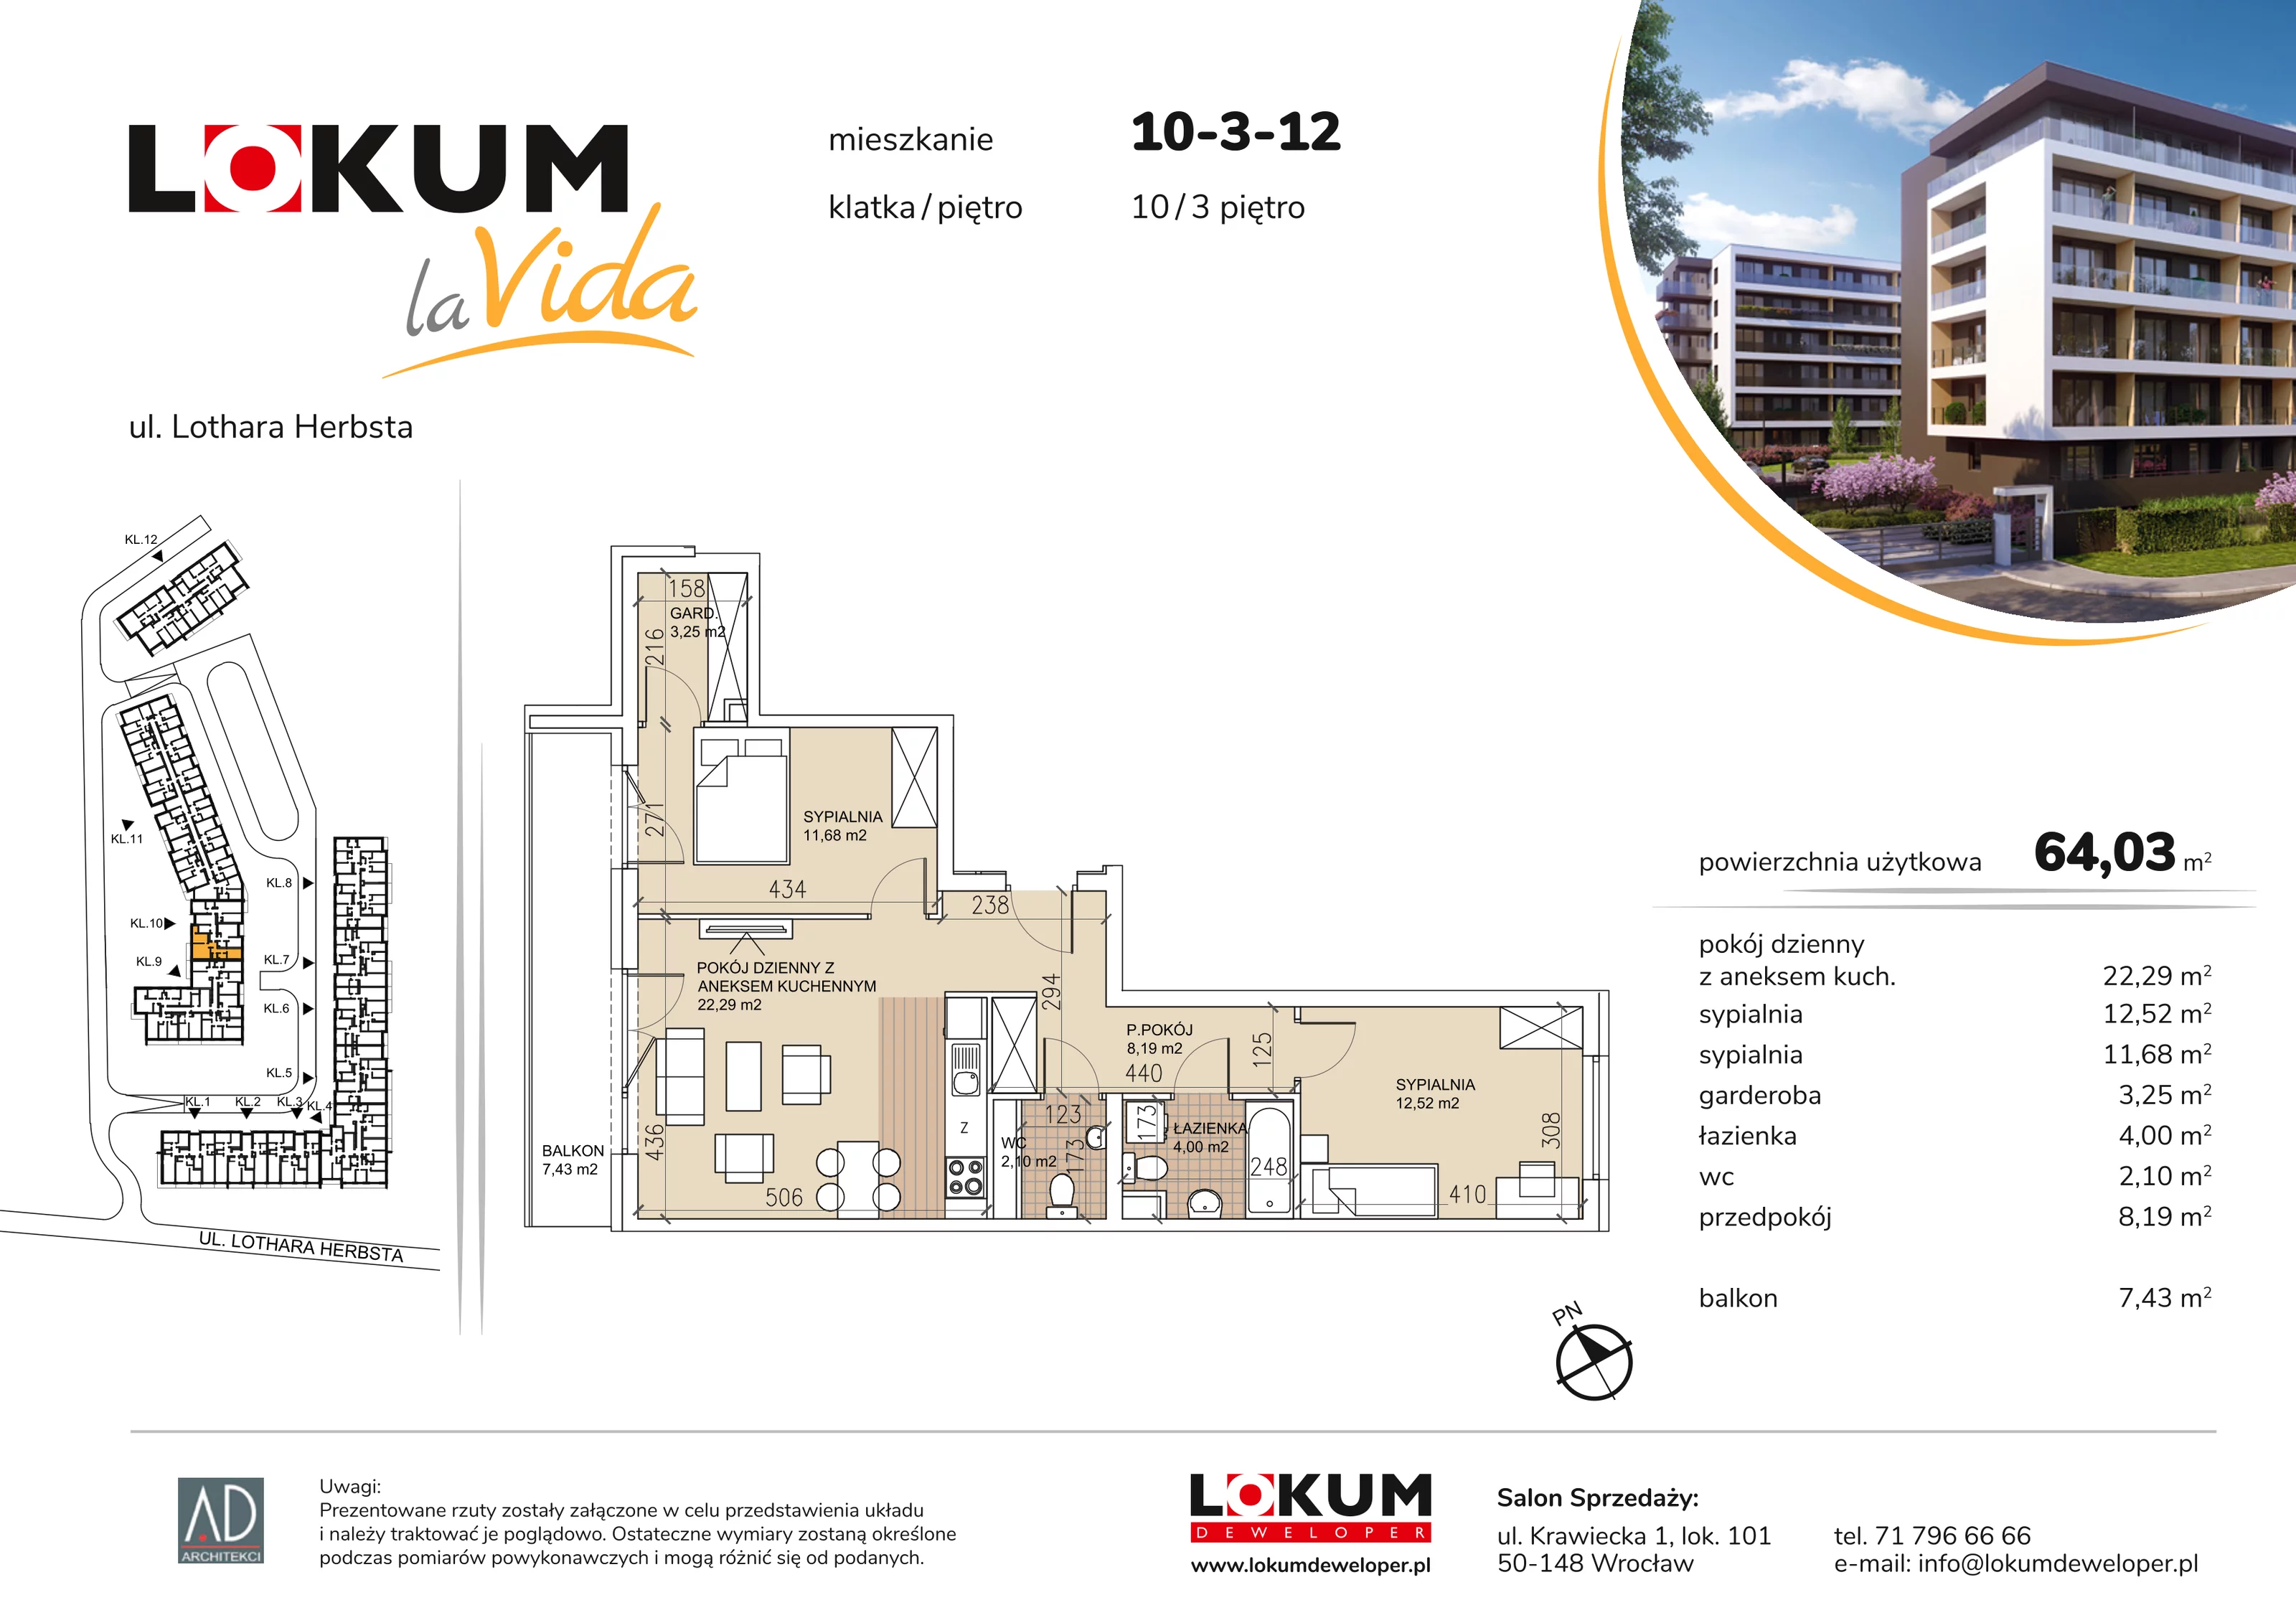 Mieszkanie 64,03 m², piętro 3, oferta nr 10-3-12, Lokum la Vida, Wrocław, Sołtysowice, ul. Lothara Herbsta